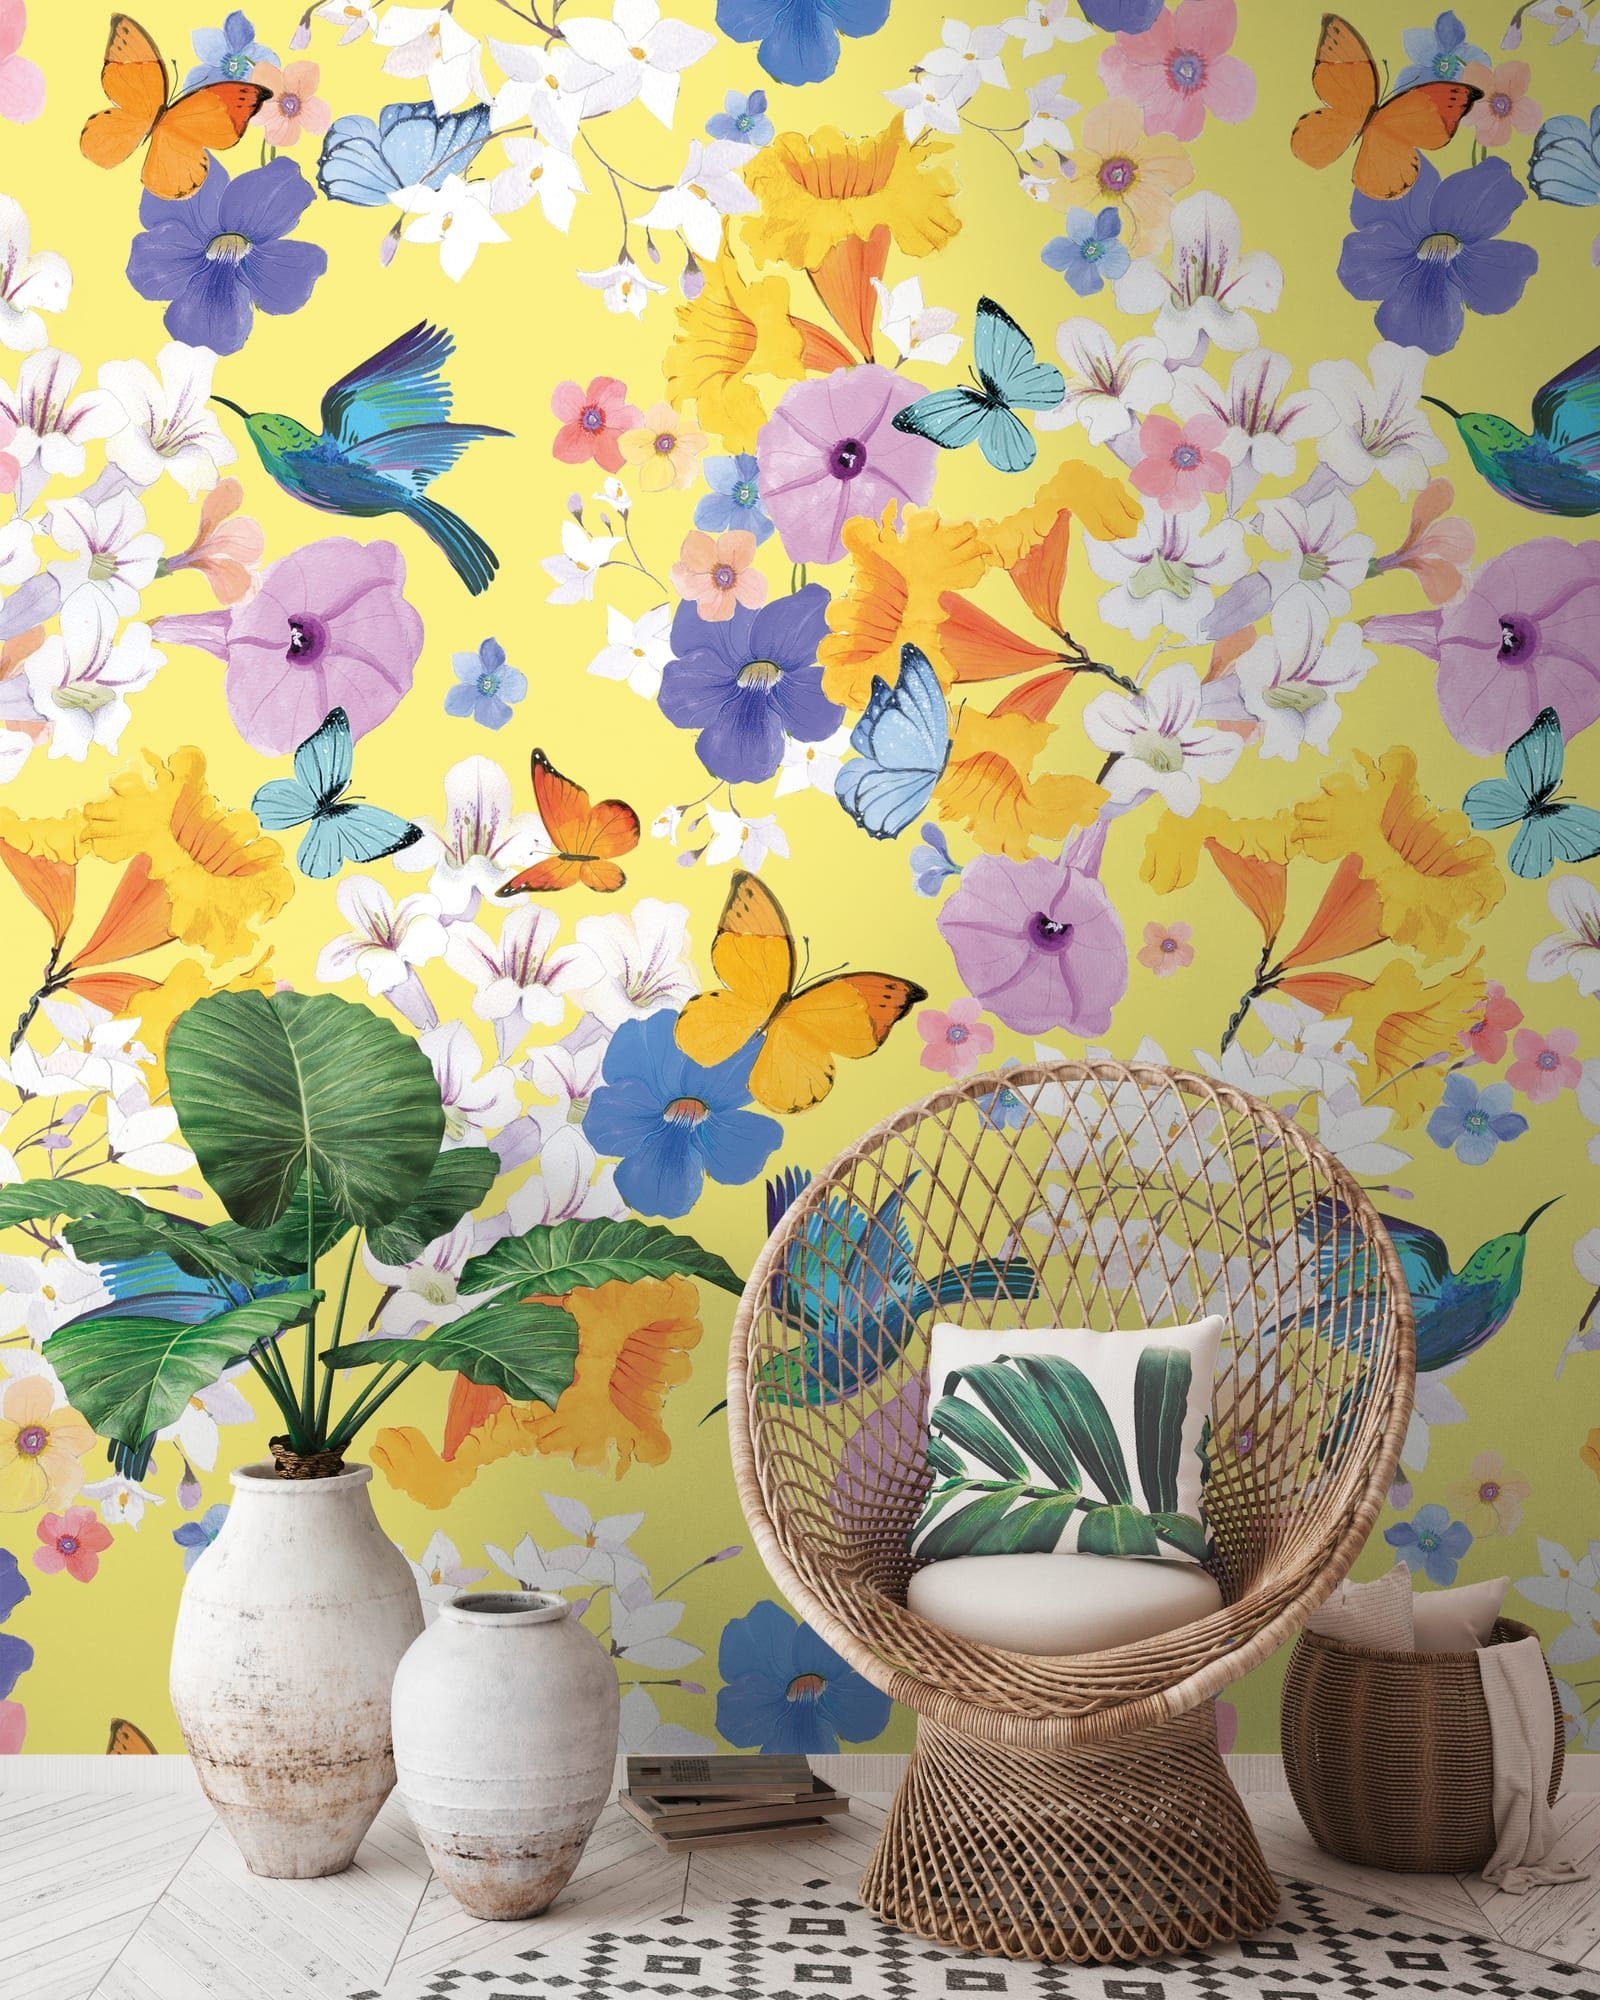 Newroom Vliestapete, [ 2,8 x 1,59 m ] großzügiges Motiv - kein wiederkehrendes Muster - nahtlos große Flächen möglich - Fototapete Wandbild Blumen Vögel Schmetterlinge Made in Germany